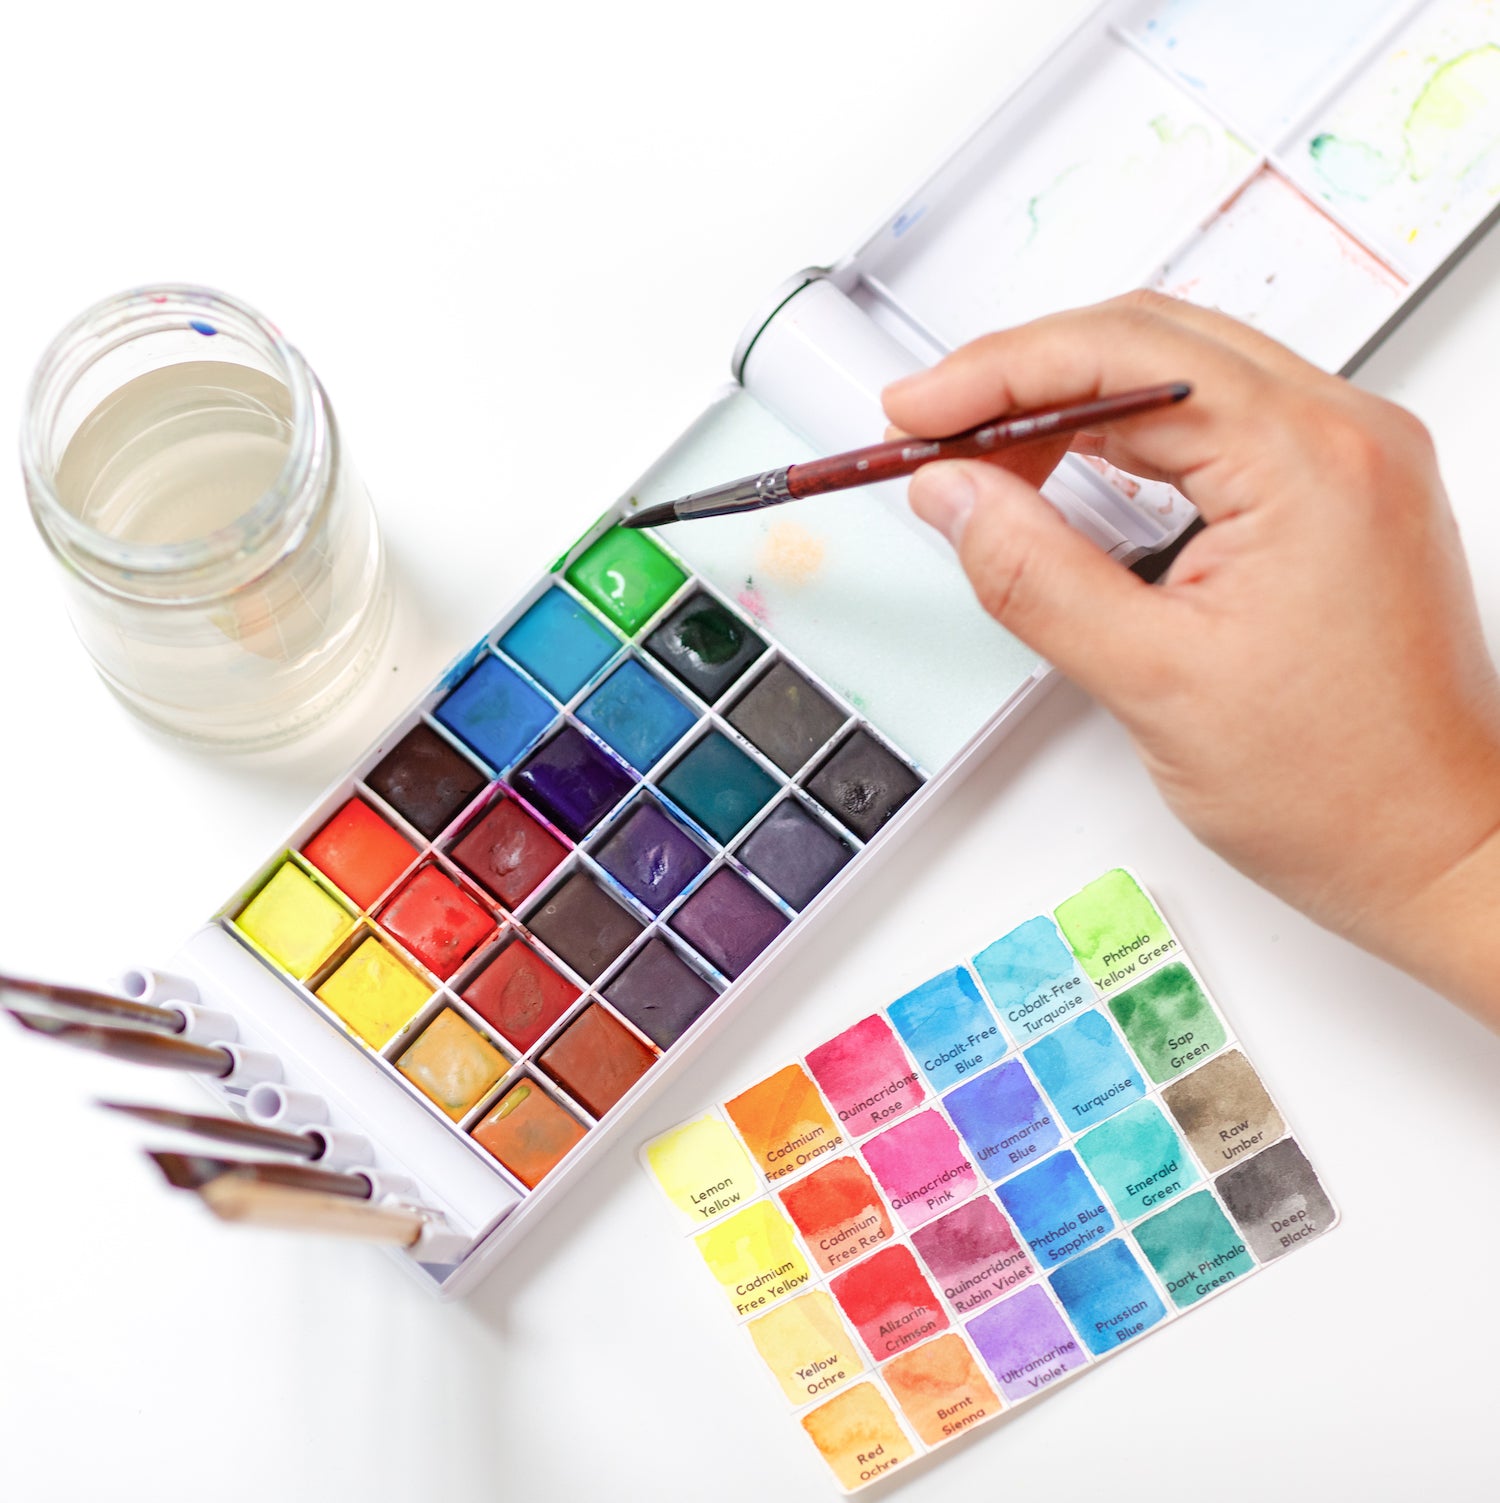 WA Portman Watercolor Paint Set for Artists - Paint and Brush Set with 24  Watercolor Paint Tubes & 15 pc Paint Brush Set - Art Paint Brushes 